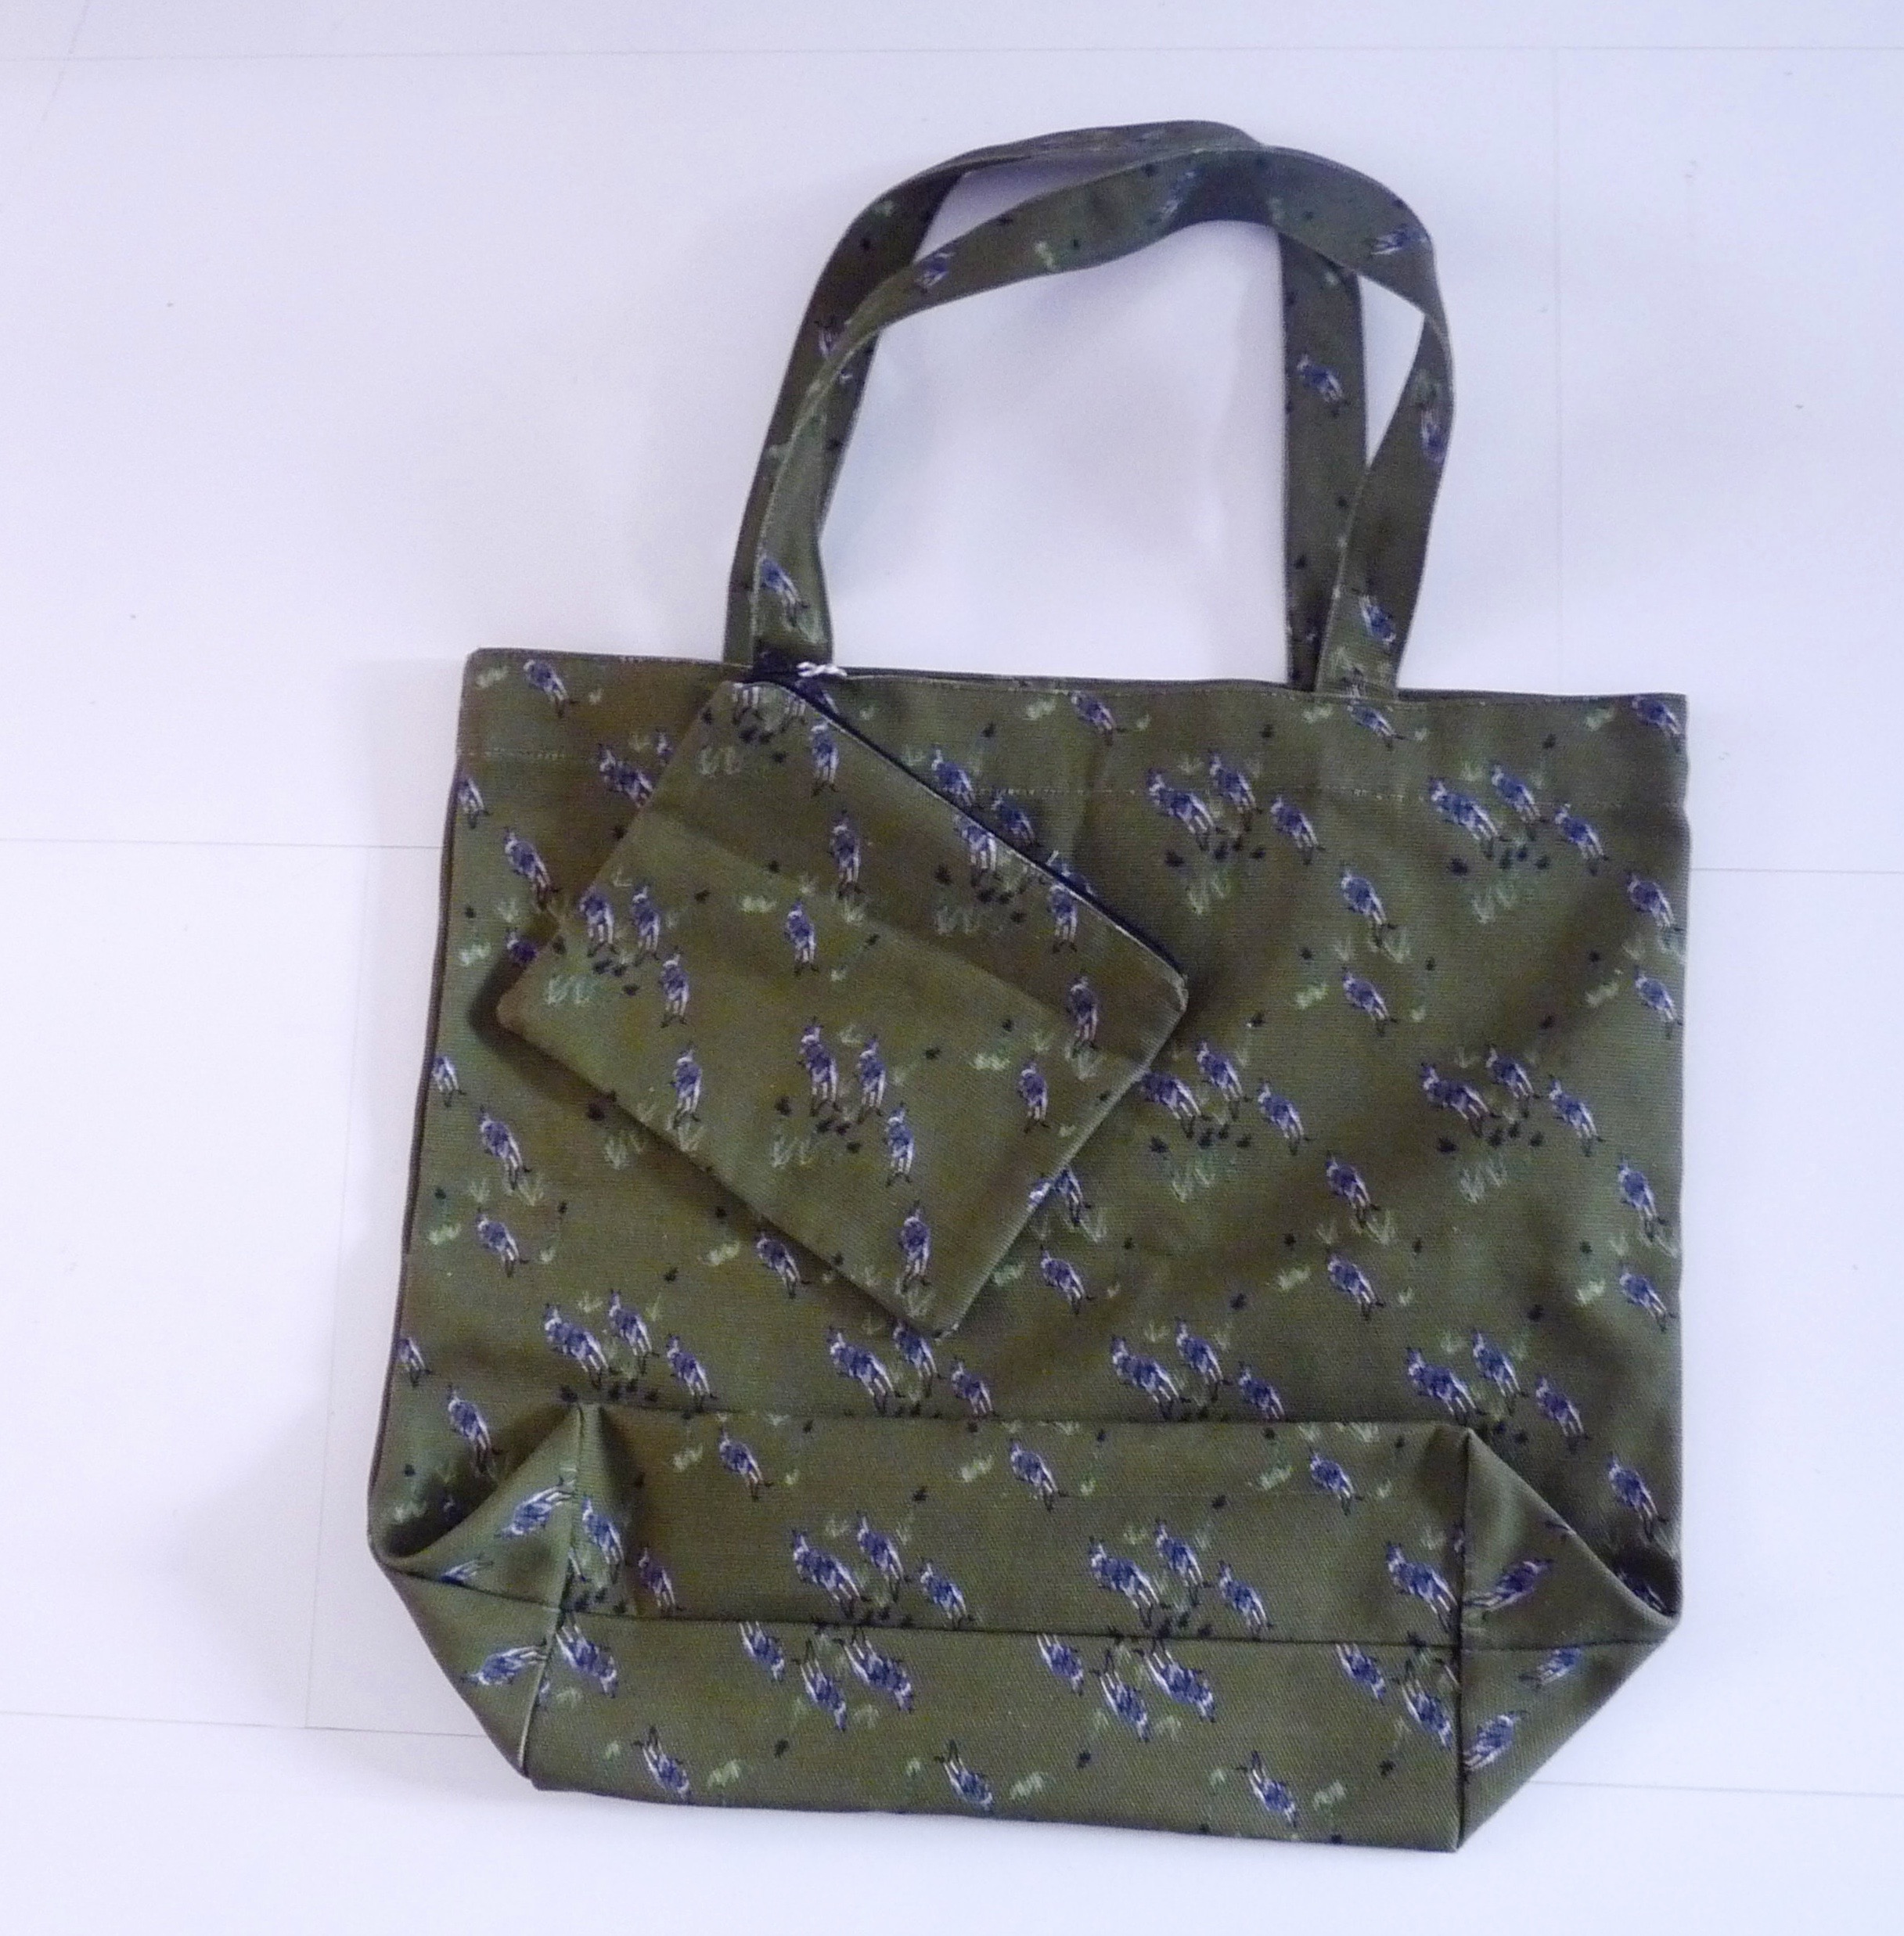 shopping bag + purse;
Kangaroos